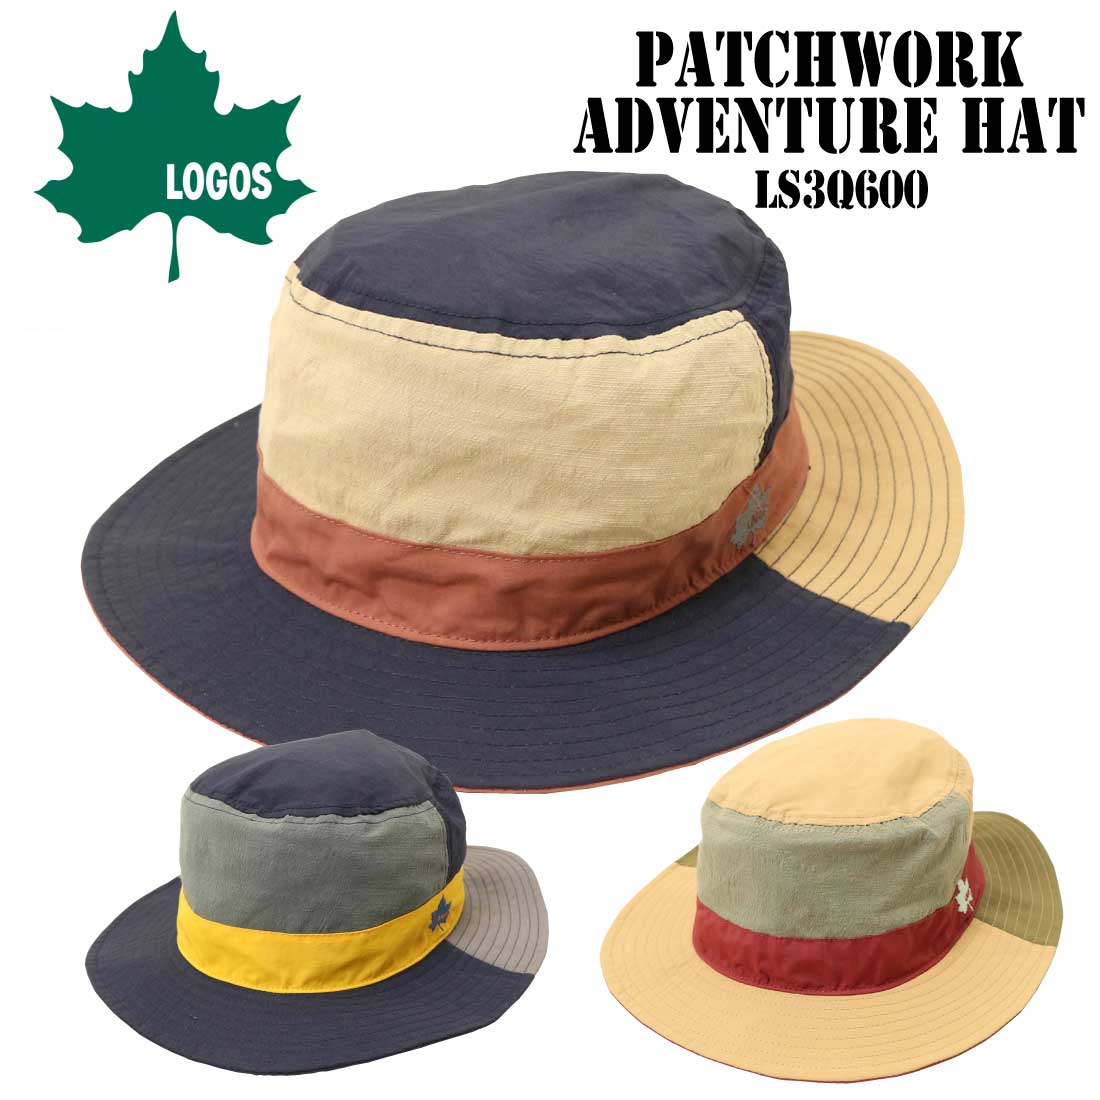 LOGOS ロゴス パッチワーク アドベンチャー ハット LS3Q600 男女兼用 アウトドア メンズ レディース グッズ 帽子